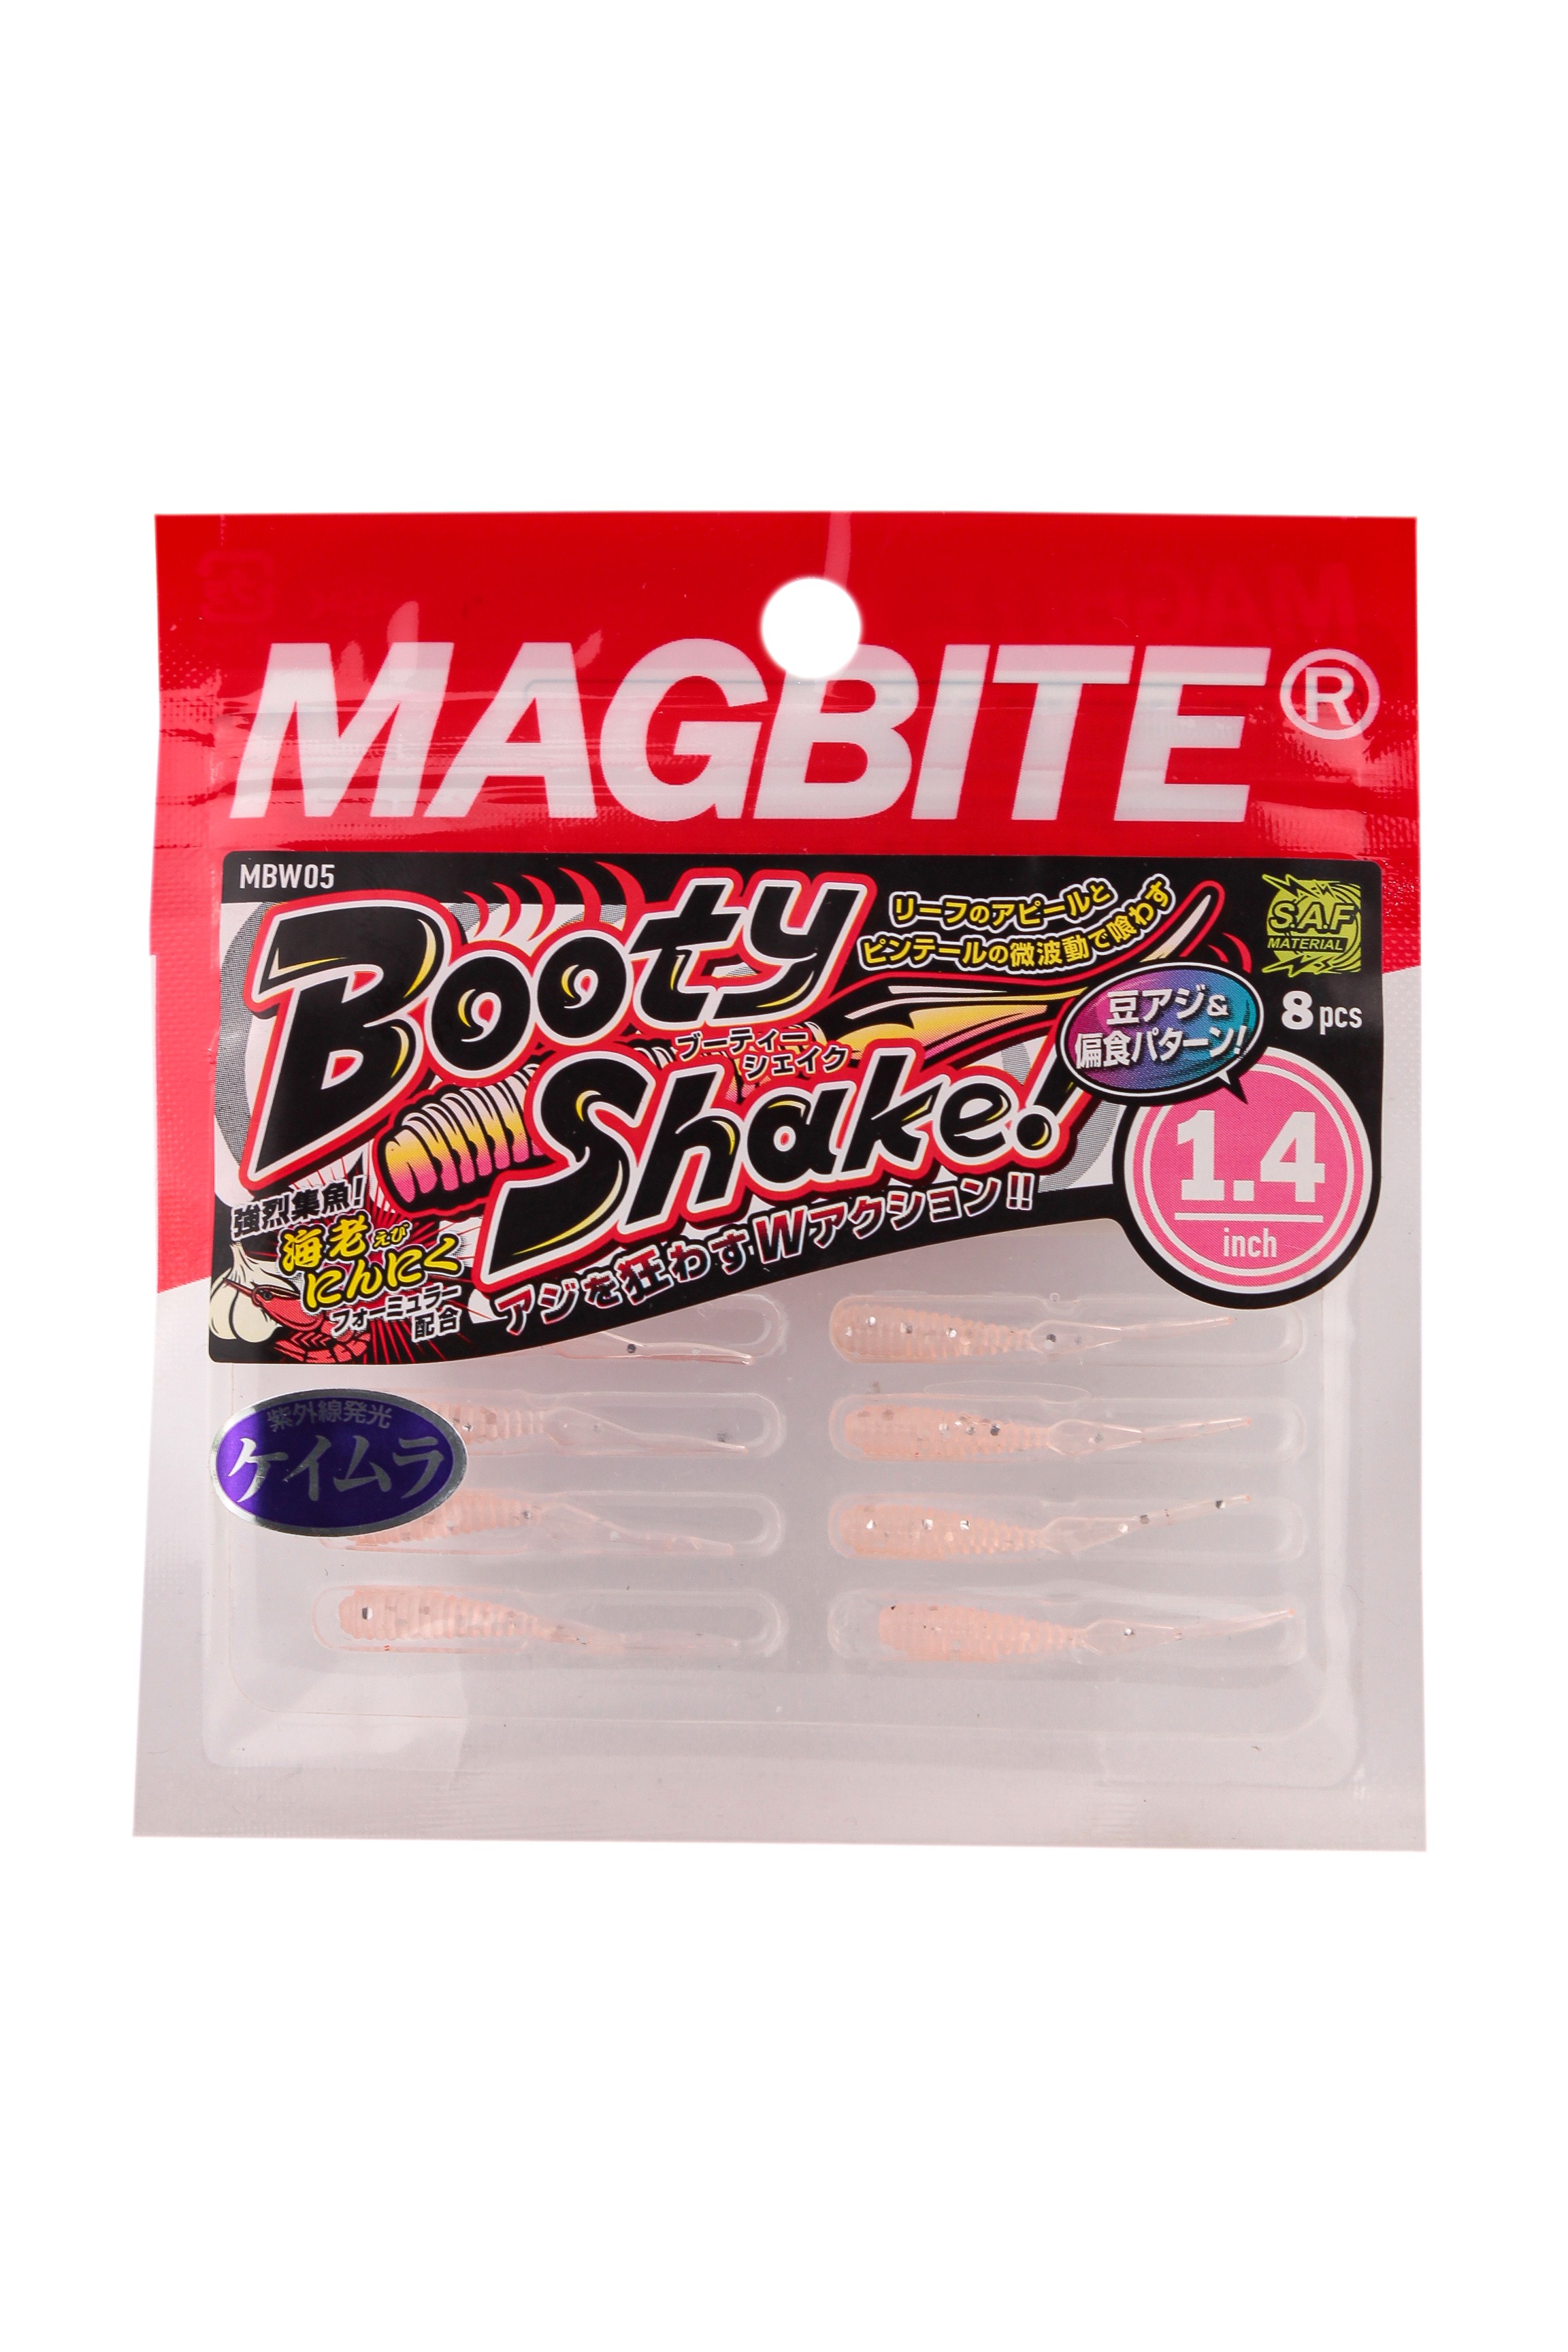 Приманка Magbite MBW05 Booty Shake 1,4" цв.06 - фото 1